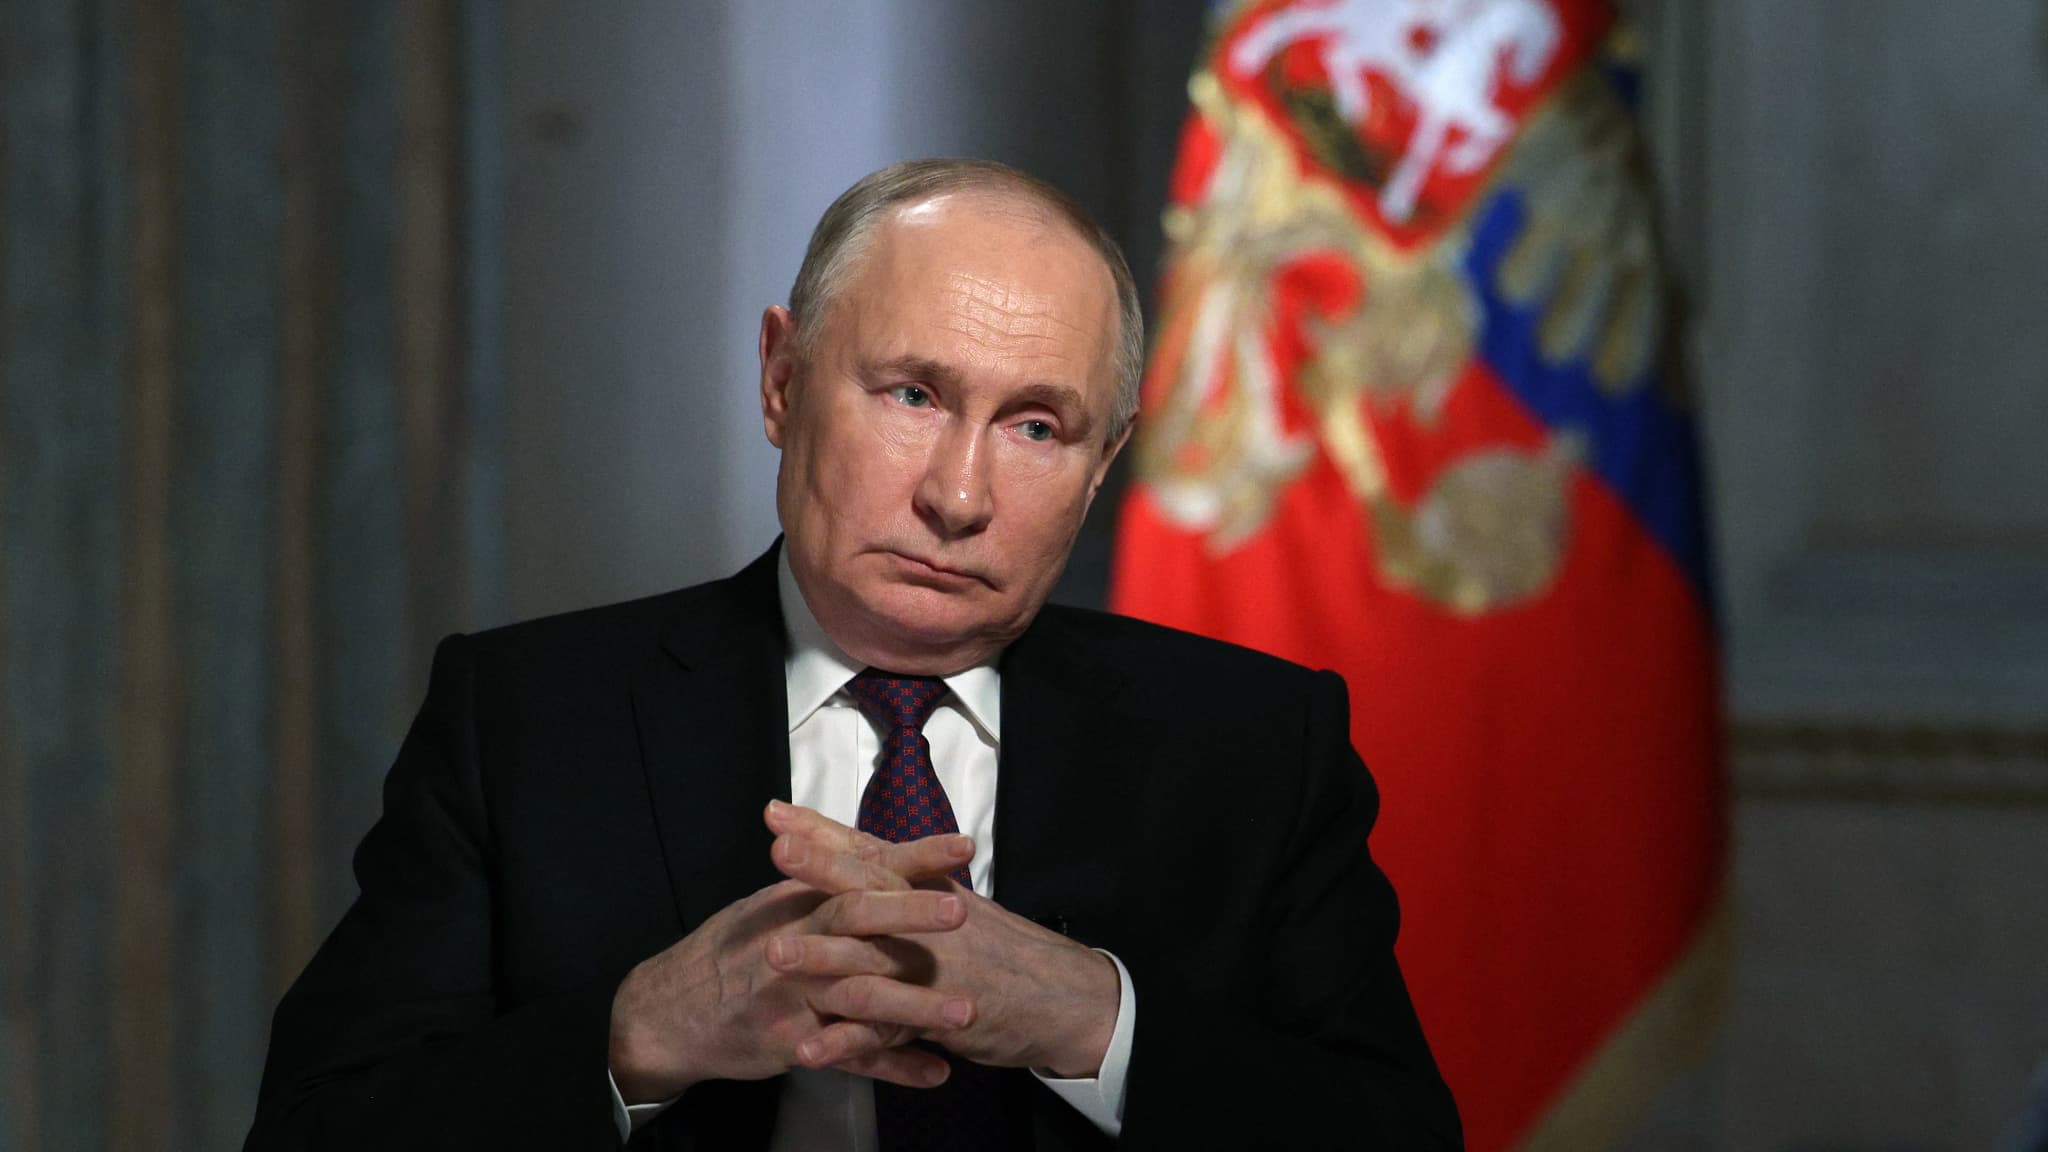 Putin weigert sich, die russischen Verluste anzurechnen